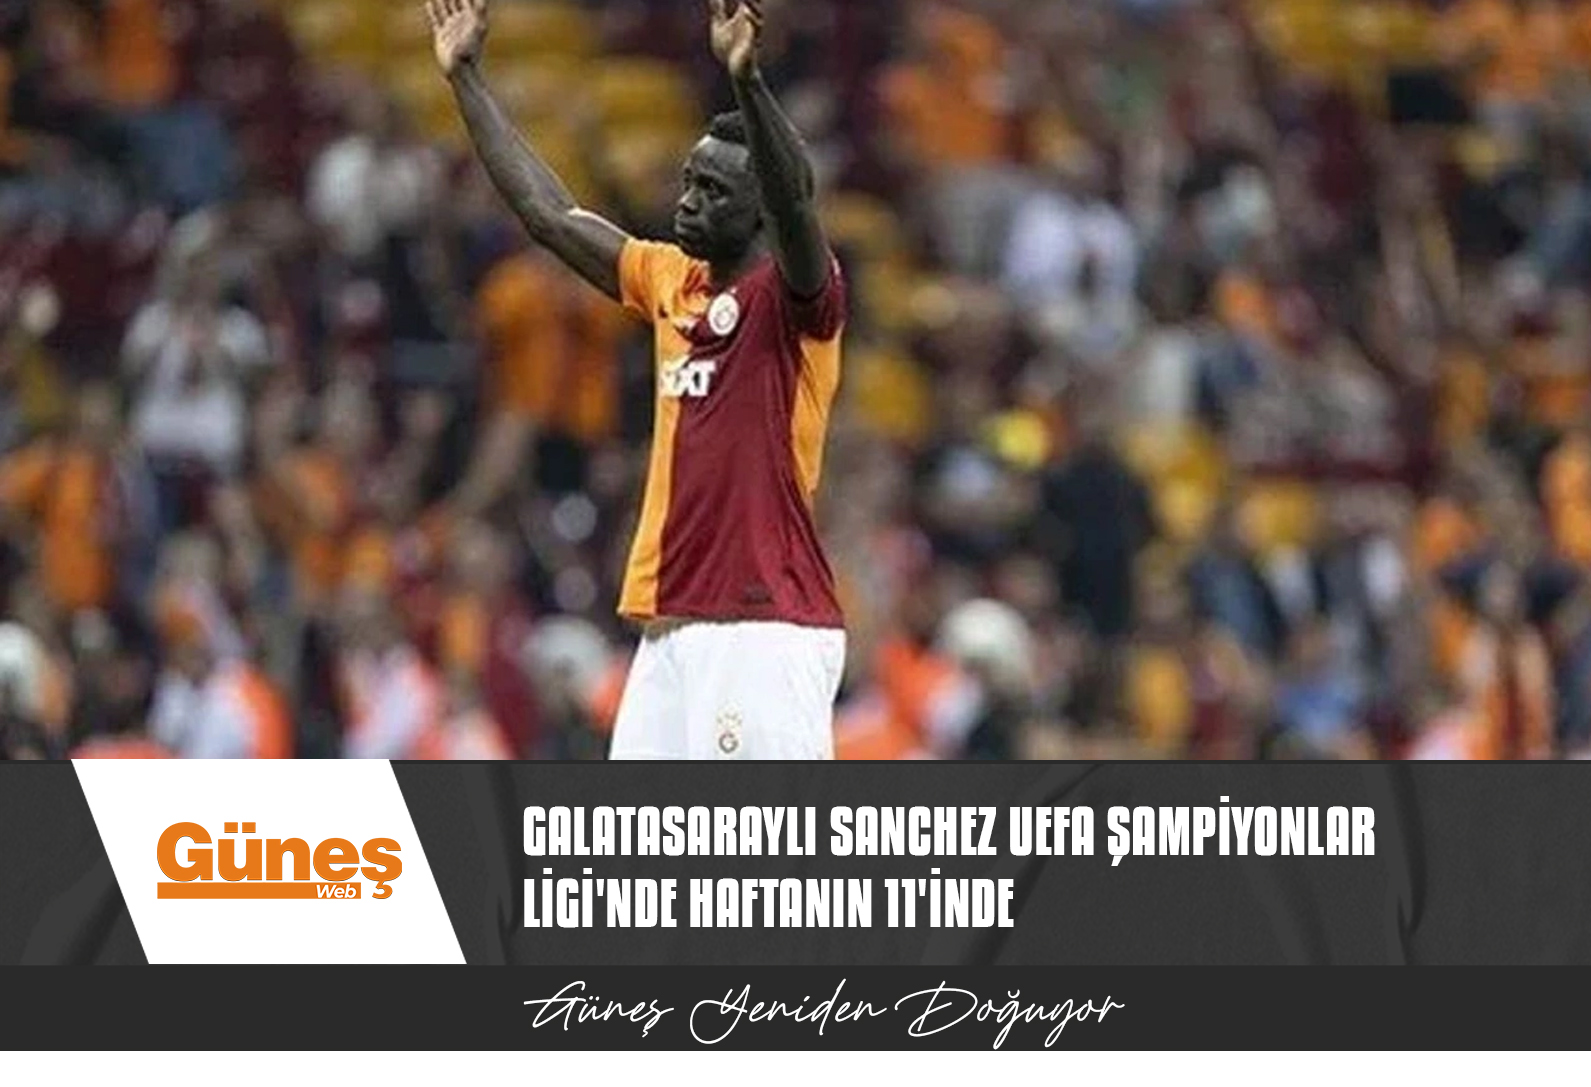 Galatasaraylı Sanchez UEFA Şampiyonlar Ligi’nde haftanın 11’inde